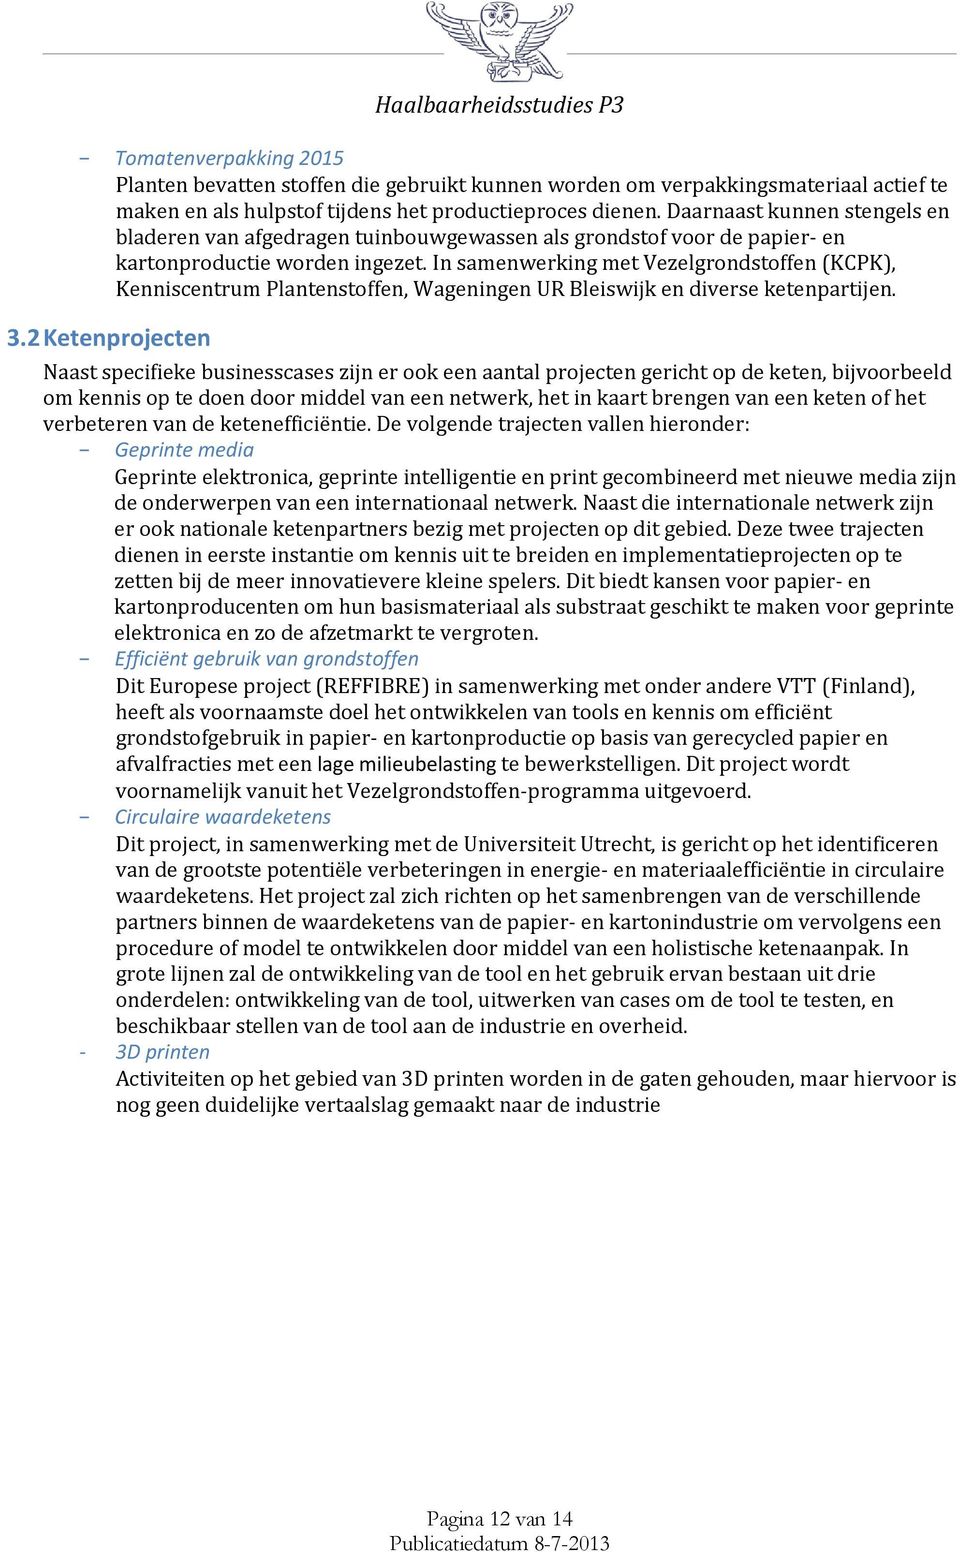 In samenwerking met Vezelgrondstoffen (KCPK), Kenniscentrum Plantenstoffen, Wageningen UR Bleiswijk en diverse ketenpartijen. 3.